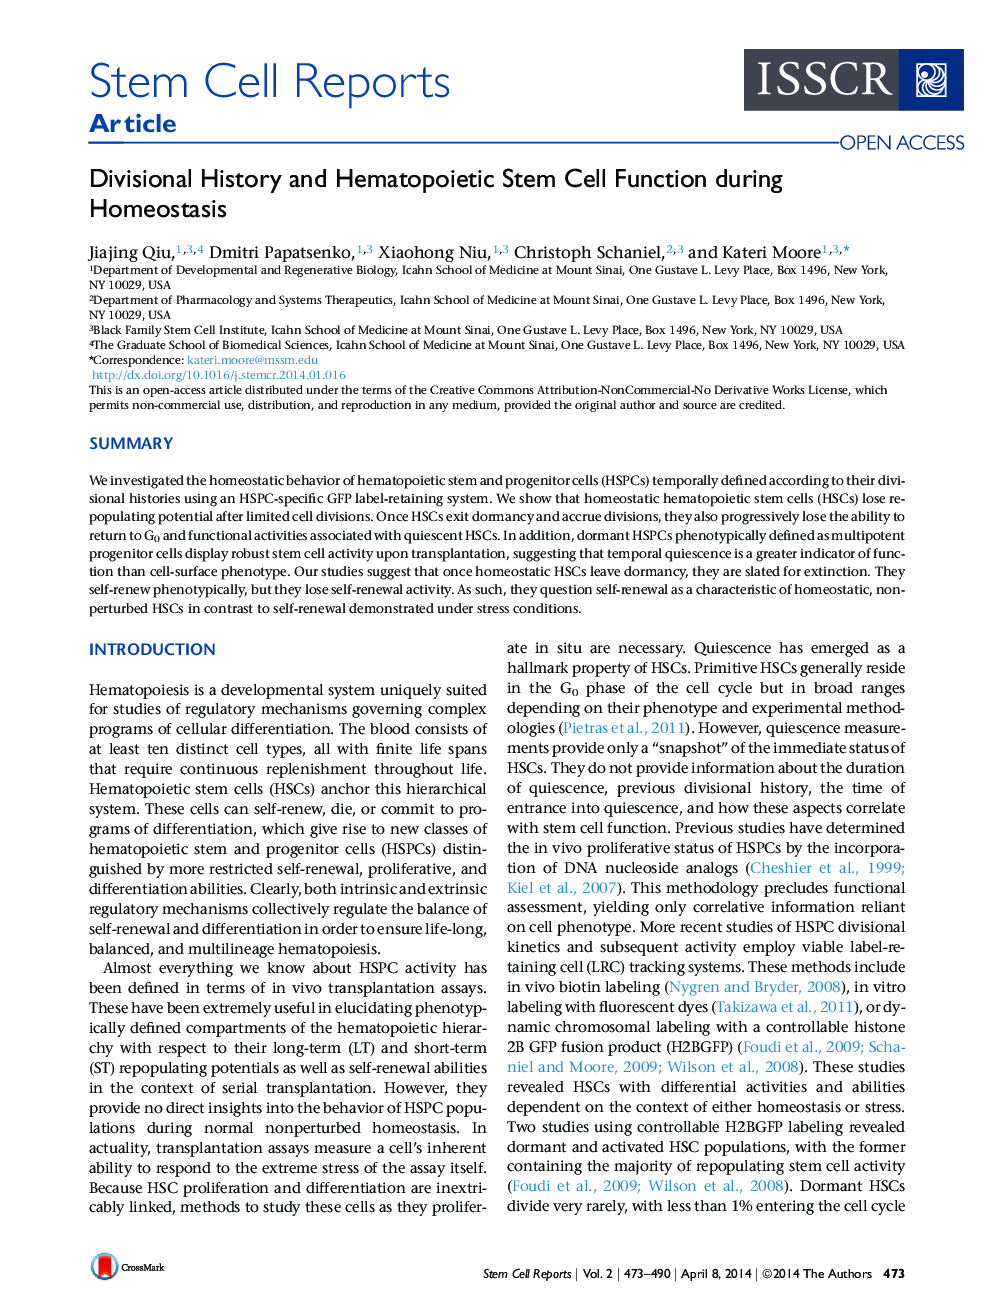 تاریخچه بخش و عملکرد سلول های بنیادی هماتوپوئید در طی هوموستازیس 